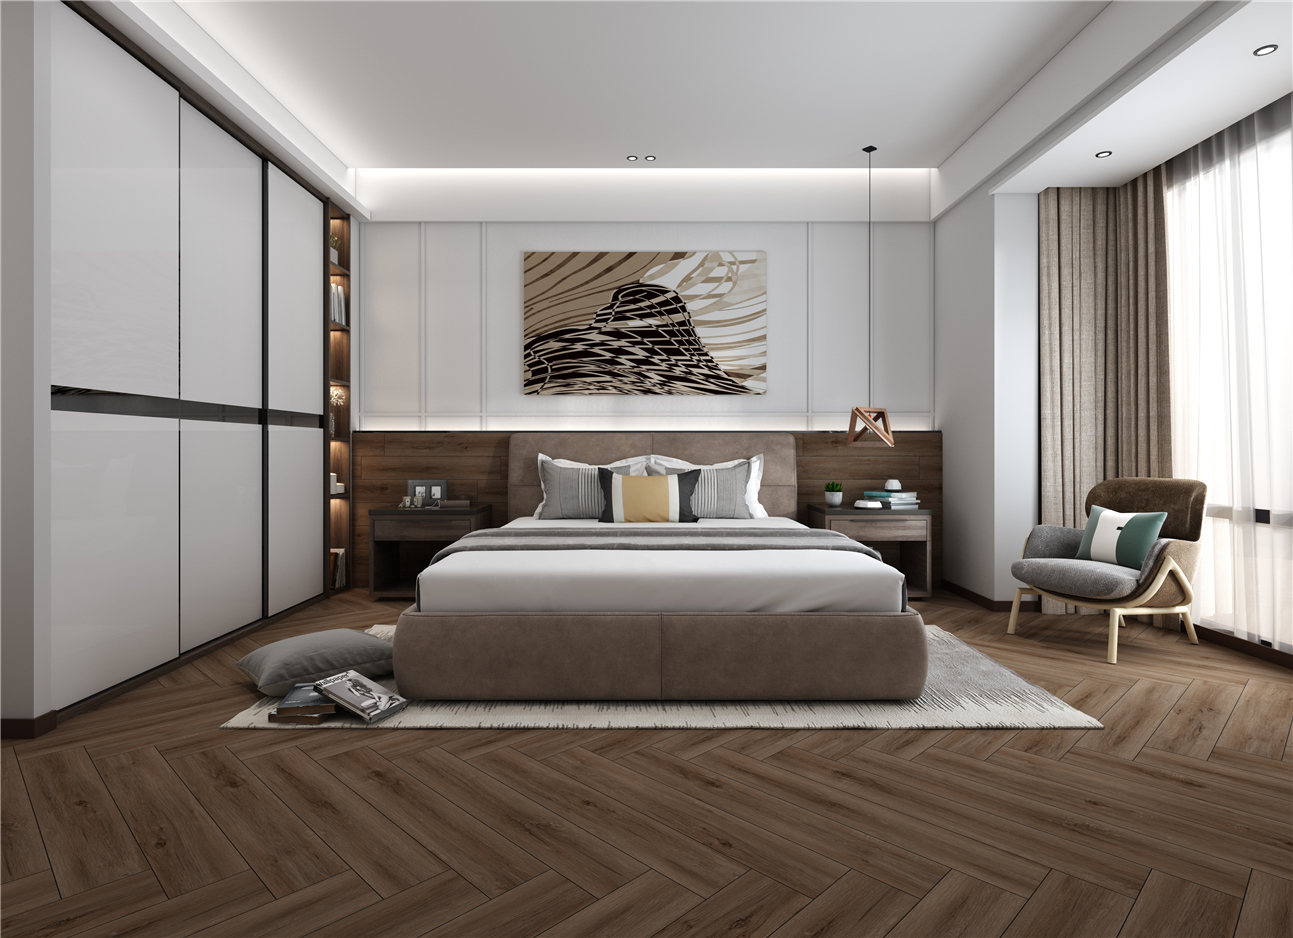 橡木木纹砖ICGS915013卧室空间效果图